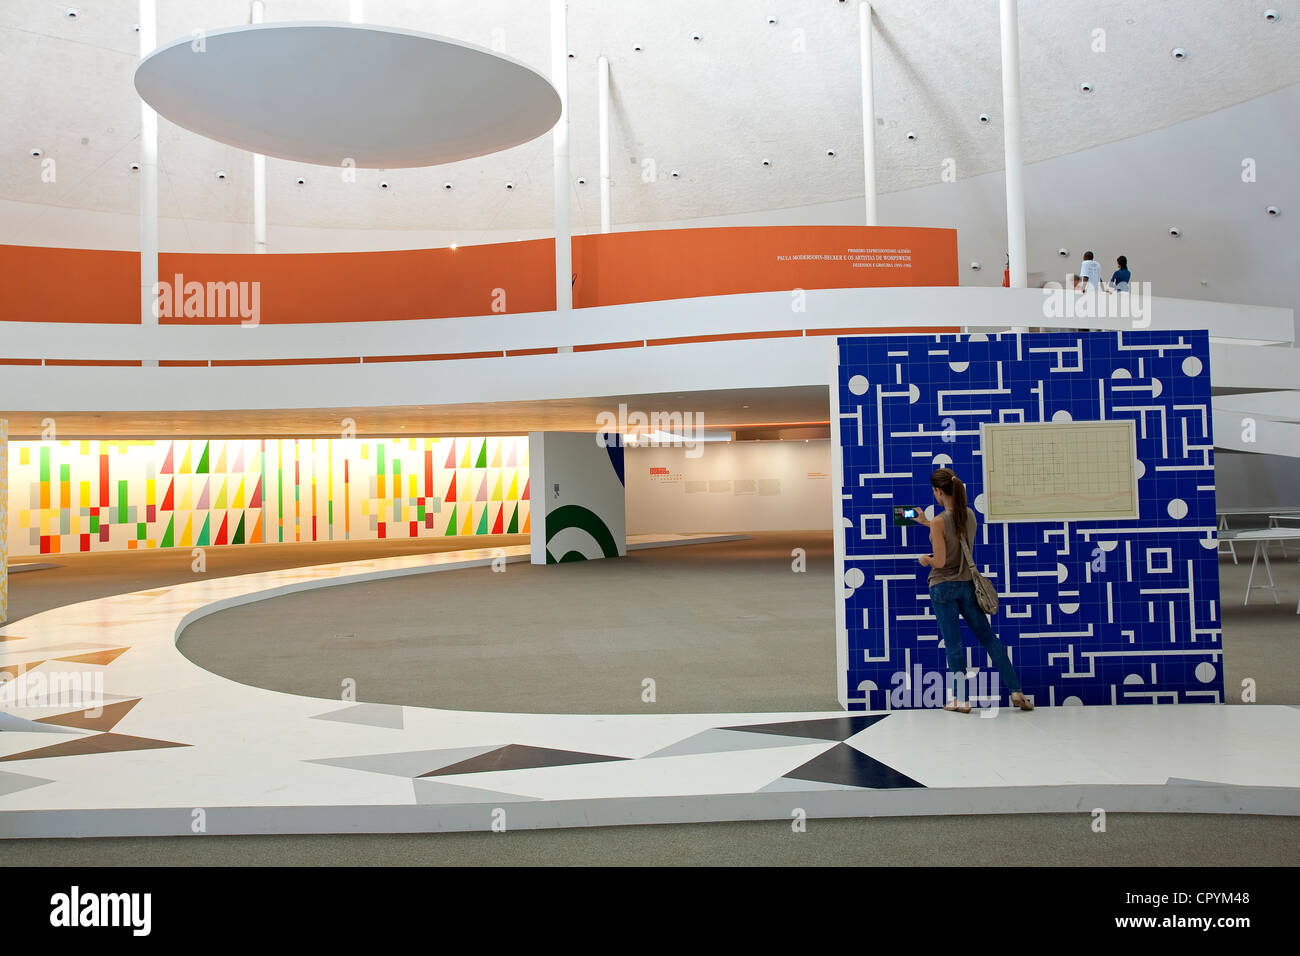 Brasilien, Brasilia, UNESCO-Welterbe, nationales Museum vom Architekten Oscar Niemeyer, Ausstellung über Grafik-design Stockfoto